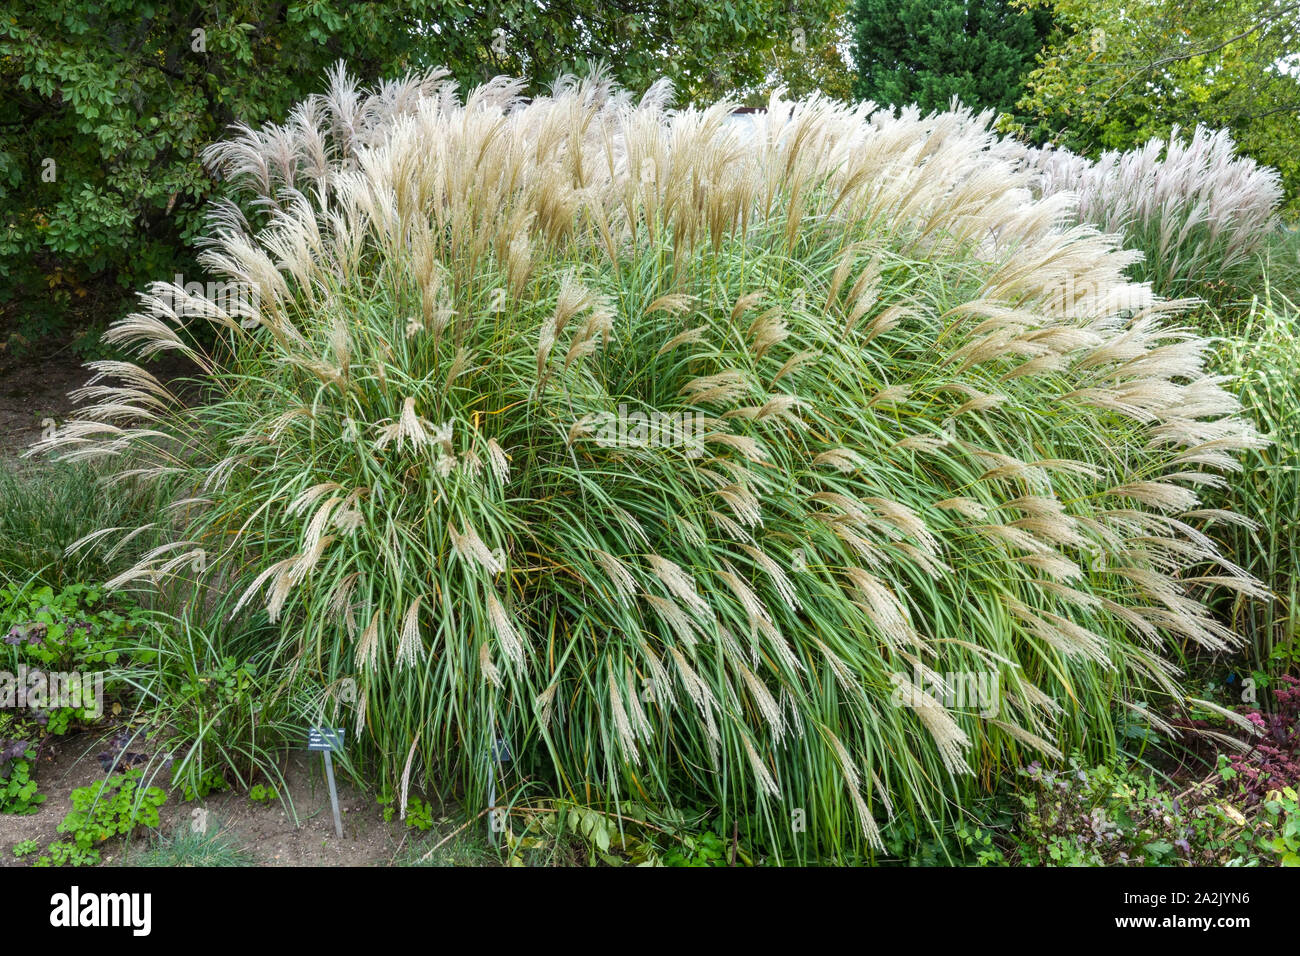 Miscanthus sinensis 'Adagio' perennials grasses Stock Photo